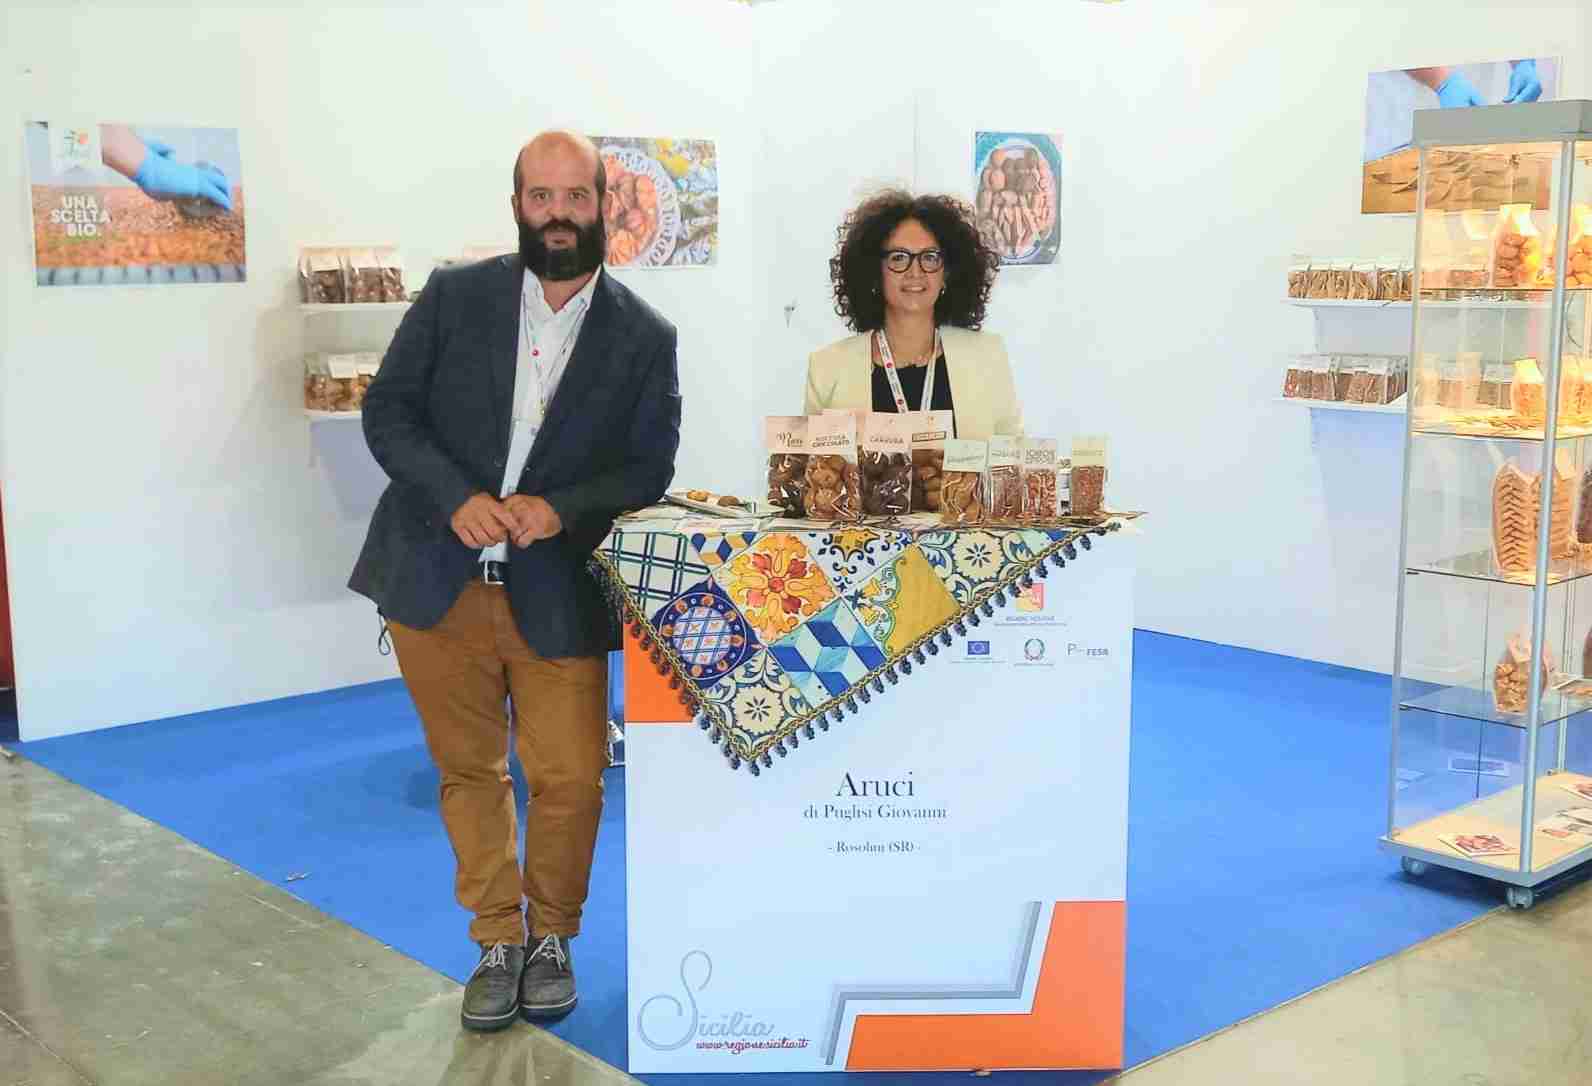 “Aruci”, di Giovanni e Melissa Puglisi, approda a Parma per “Cibus”, la fiera internazionale dell’agroalimentare